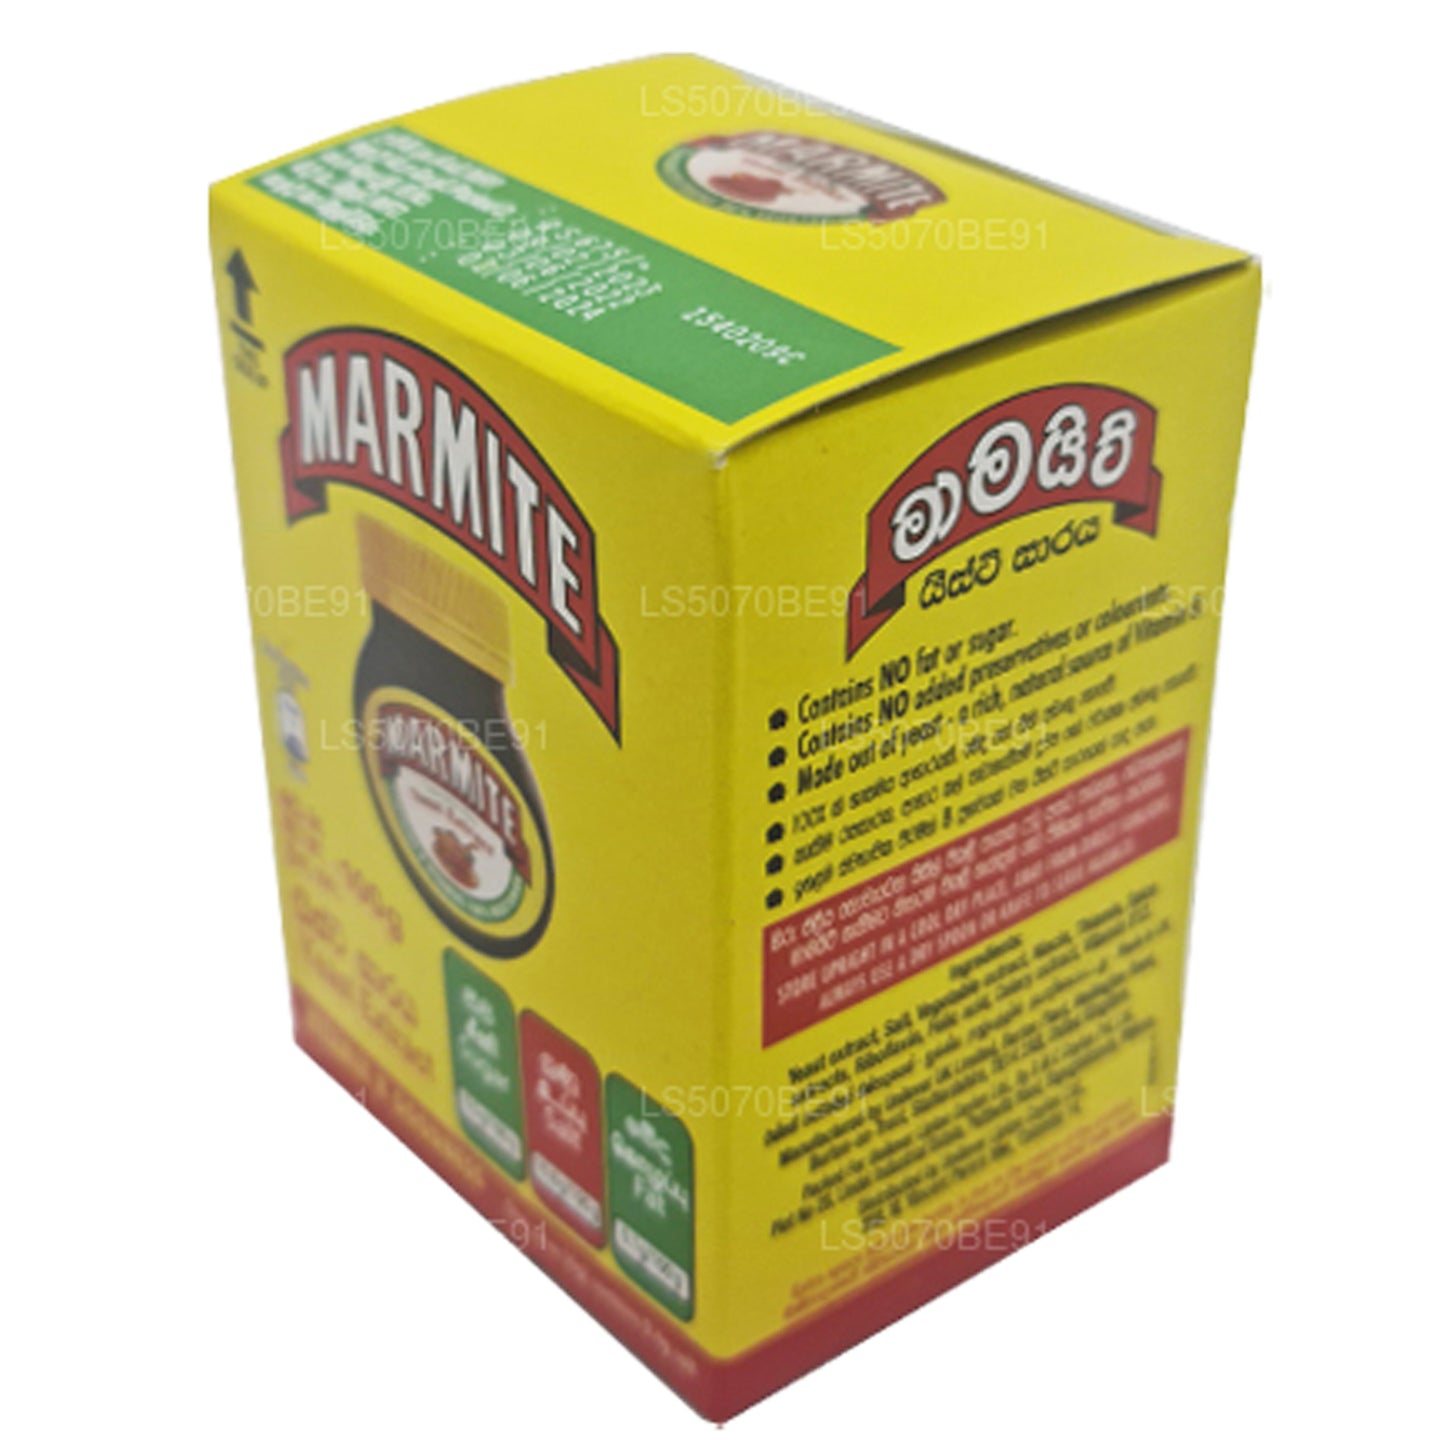 Marmite 酵母提取物 (100 克)